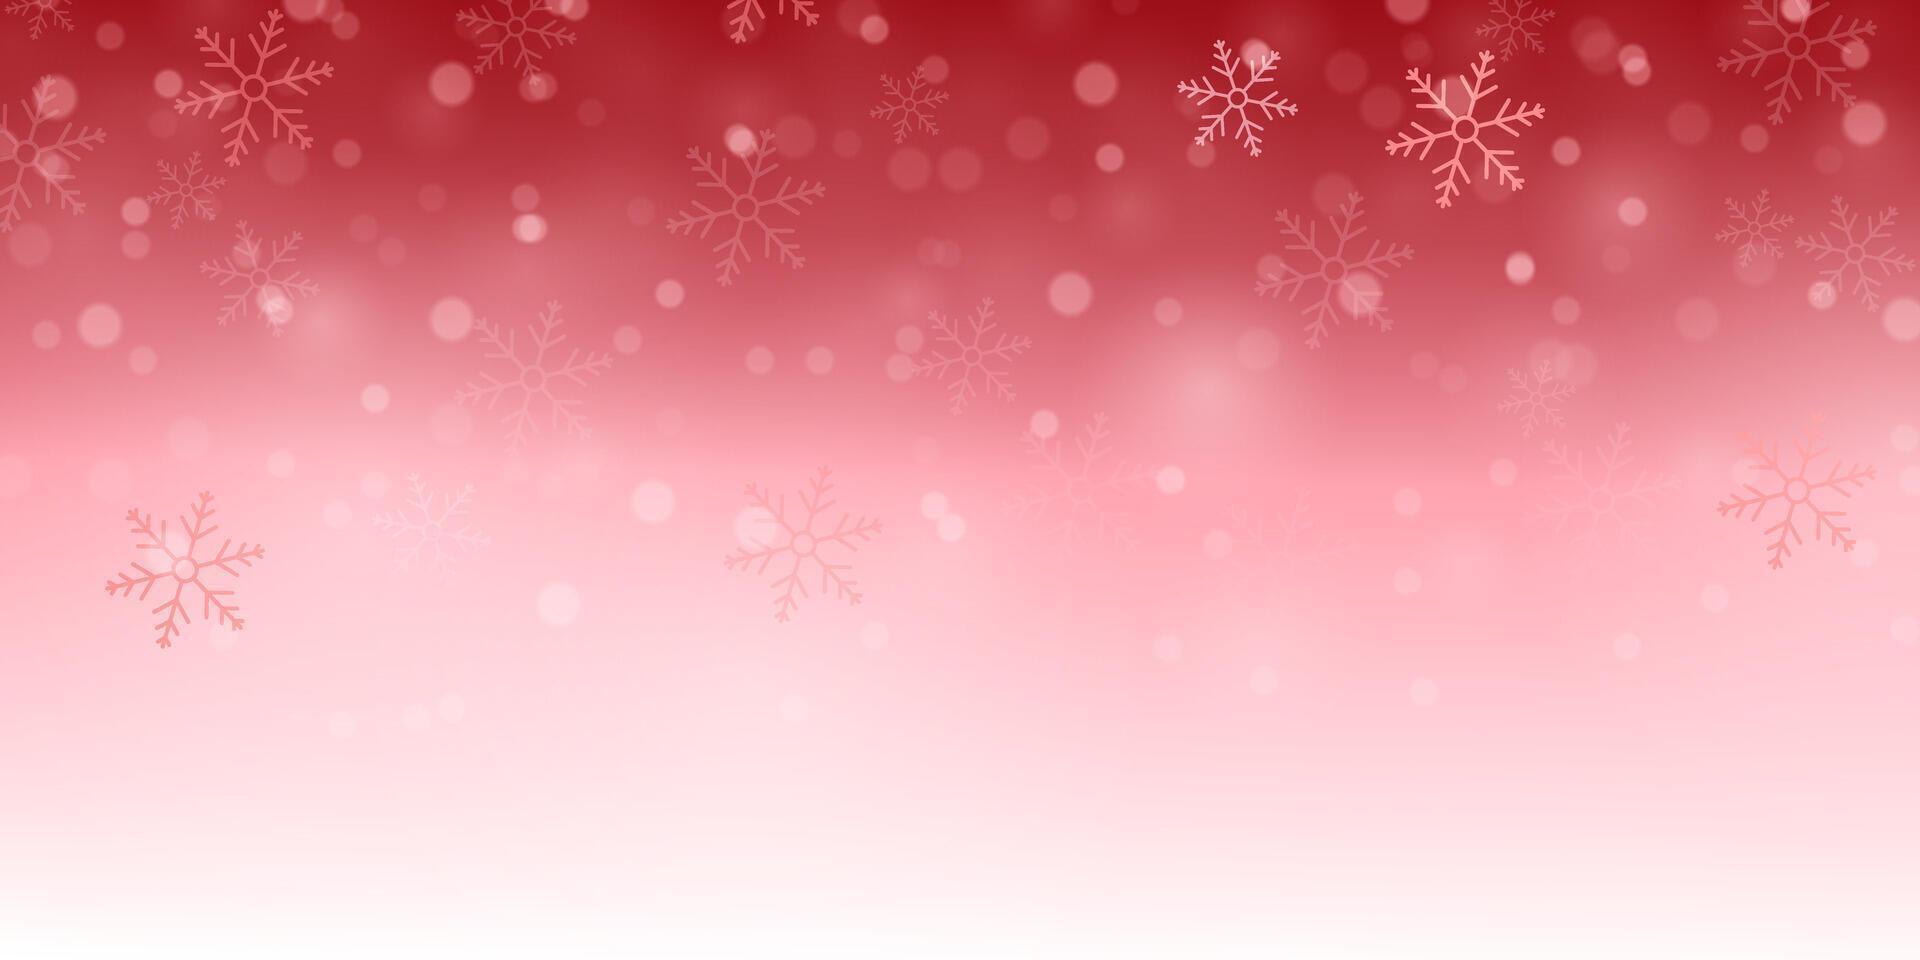 Natal fundo vermelho com a queda neve fundo poster lindo vetor ilustração